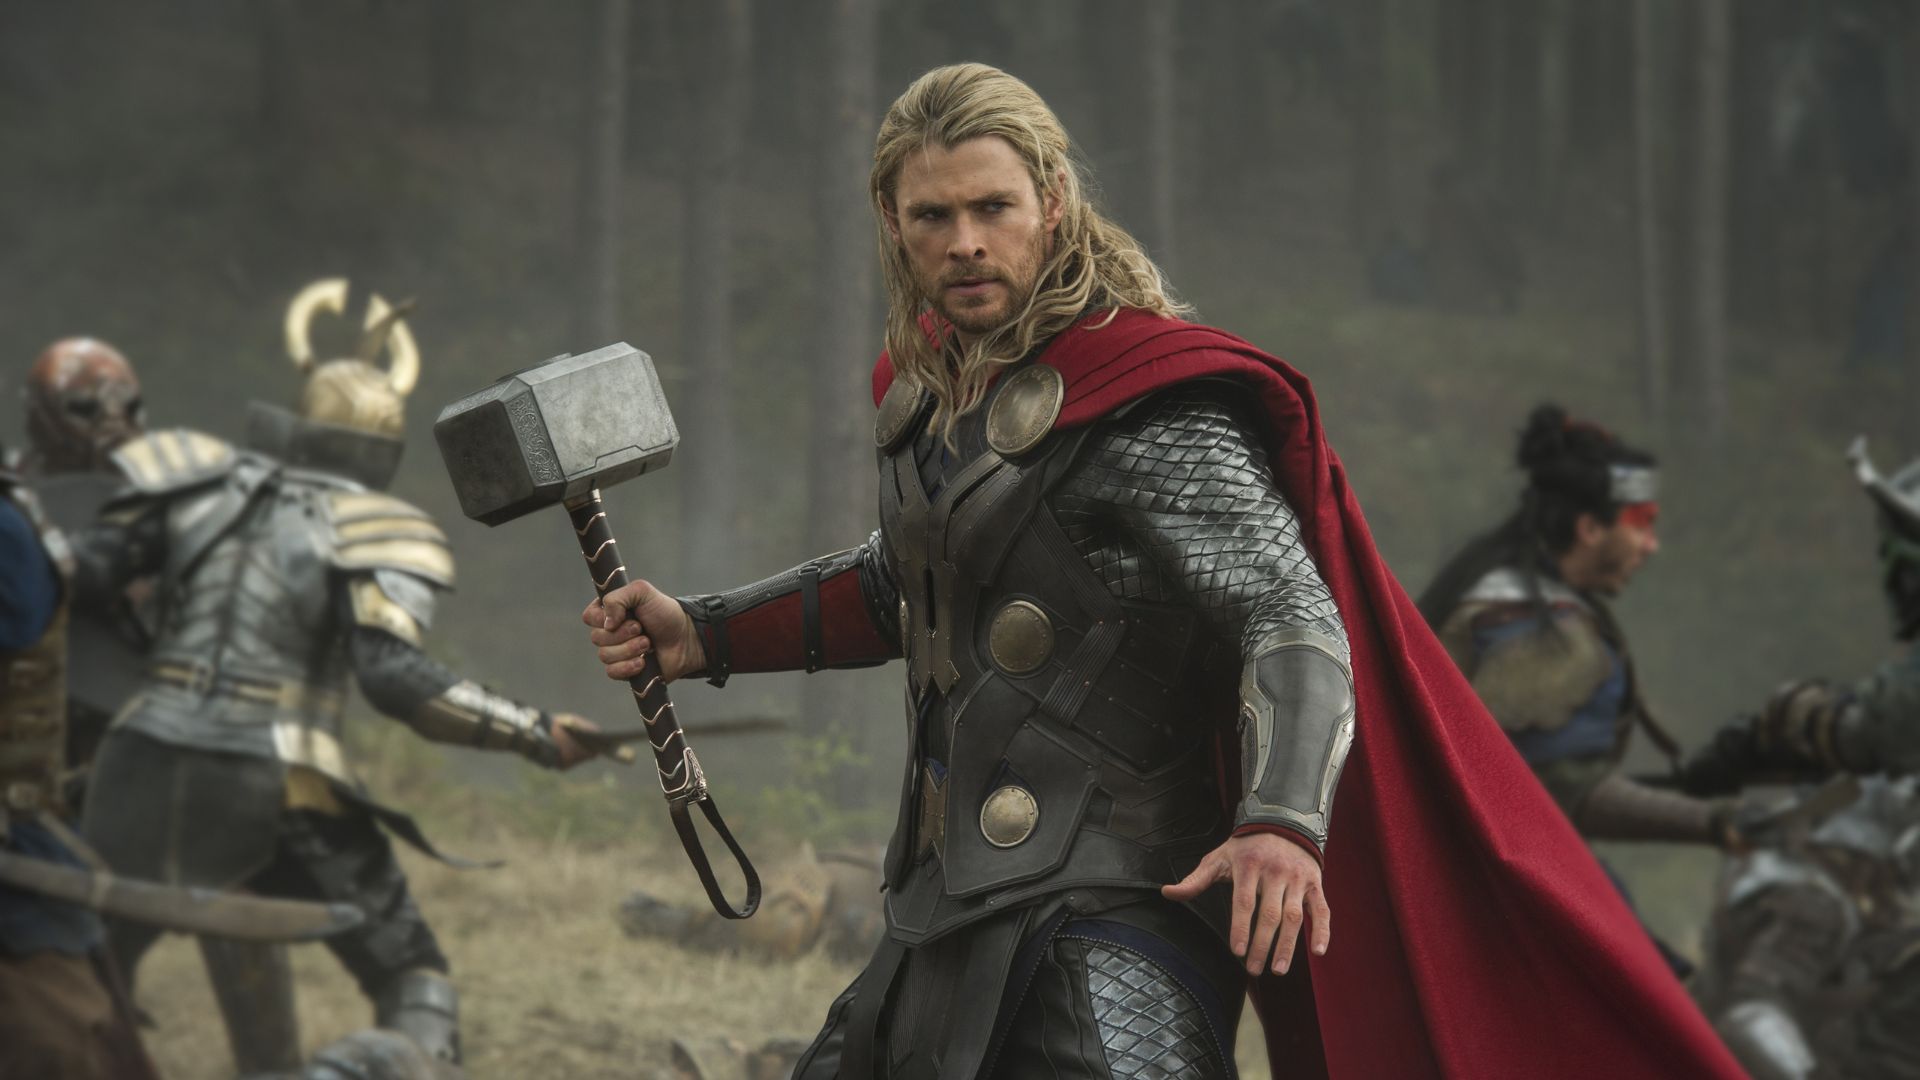 Intérprete de Thor, Chris Hemsworth fará pausa em carreira devido a risco de Alzheimer